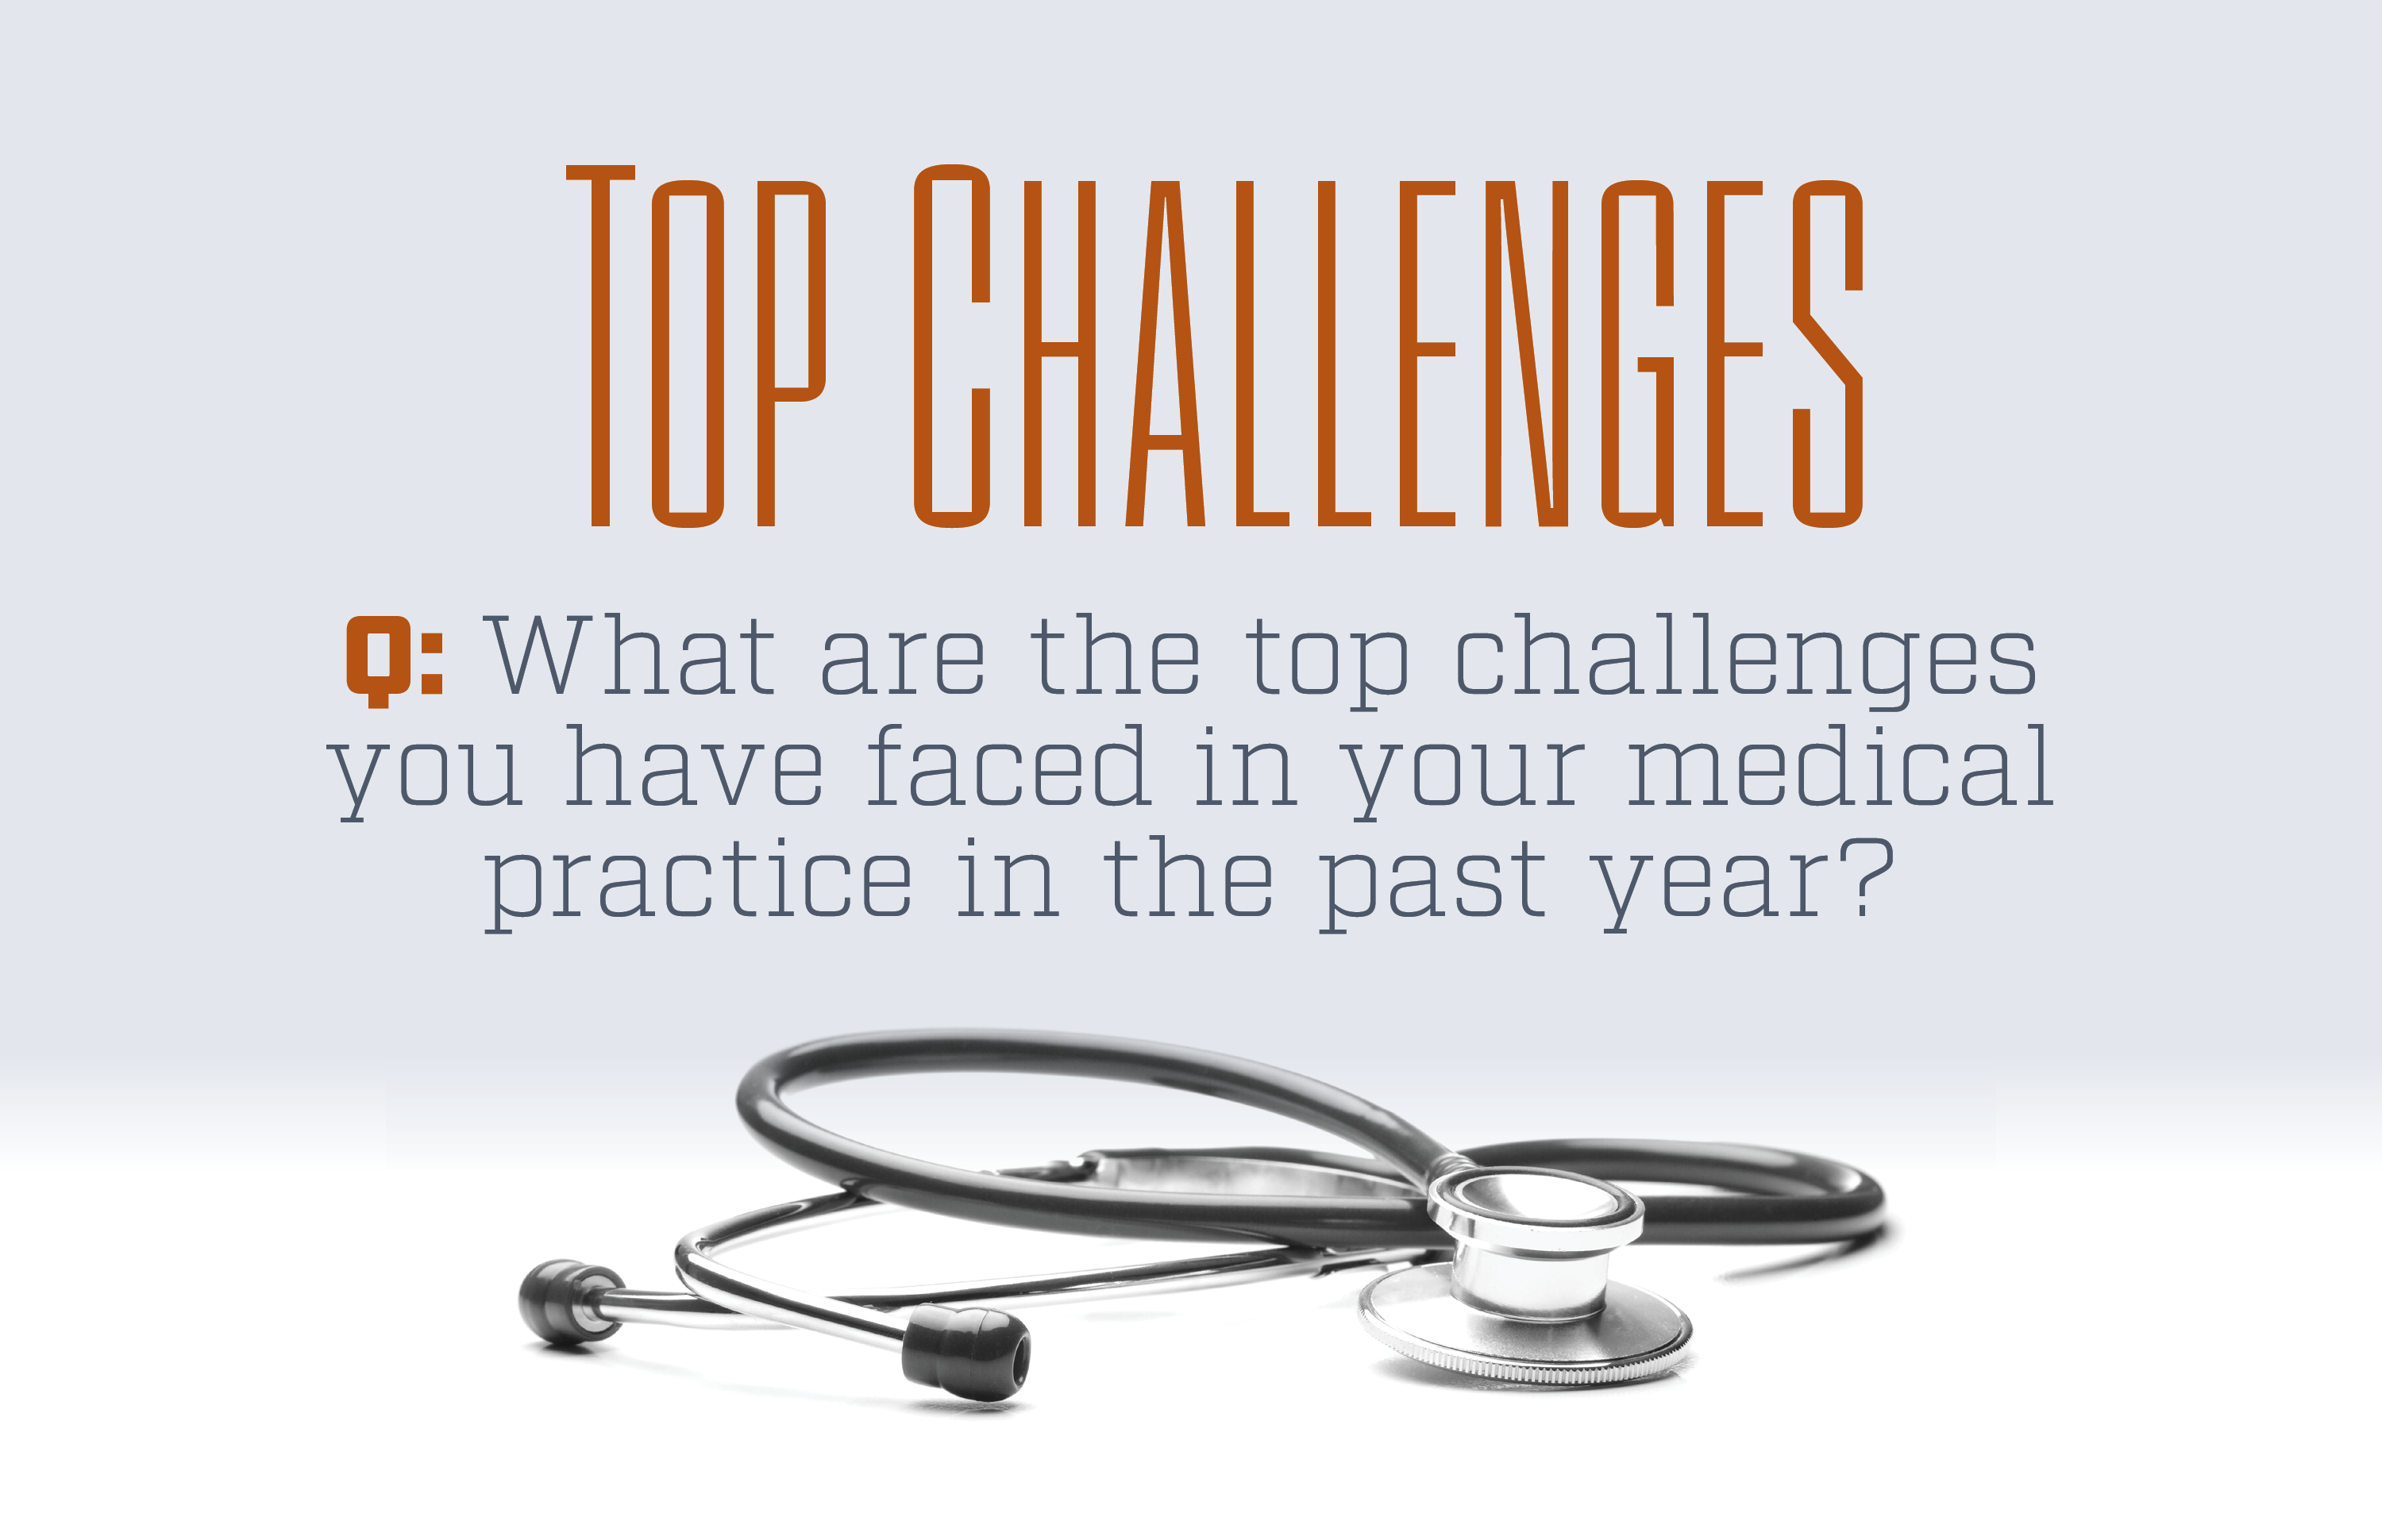 Top Challenges Survey results | © MJH Lifesciences